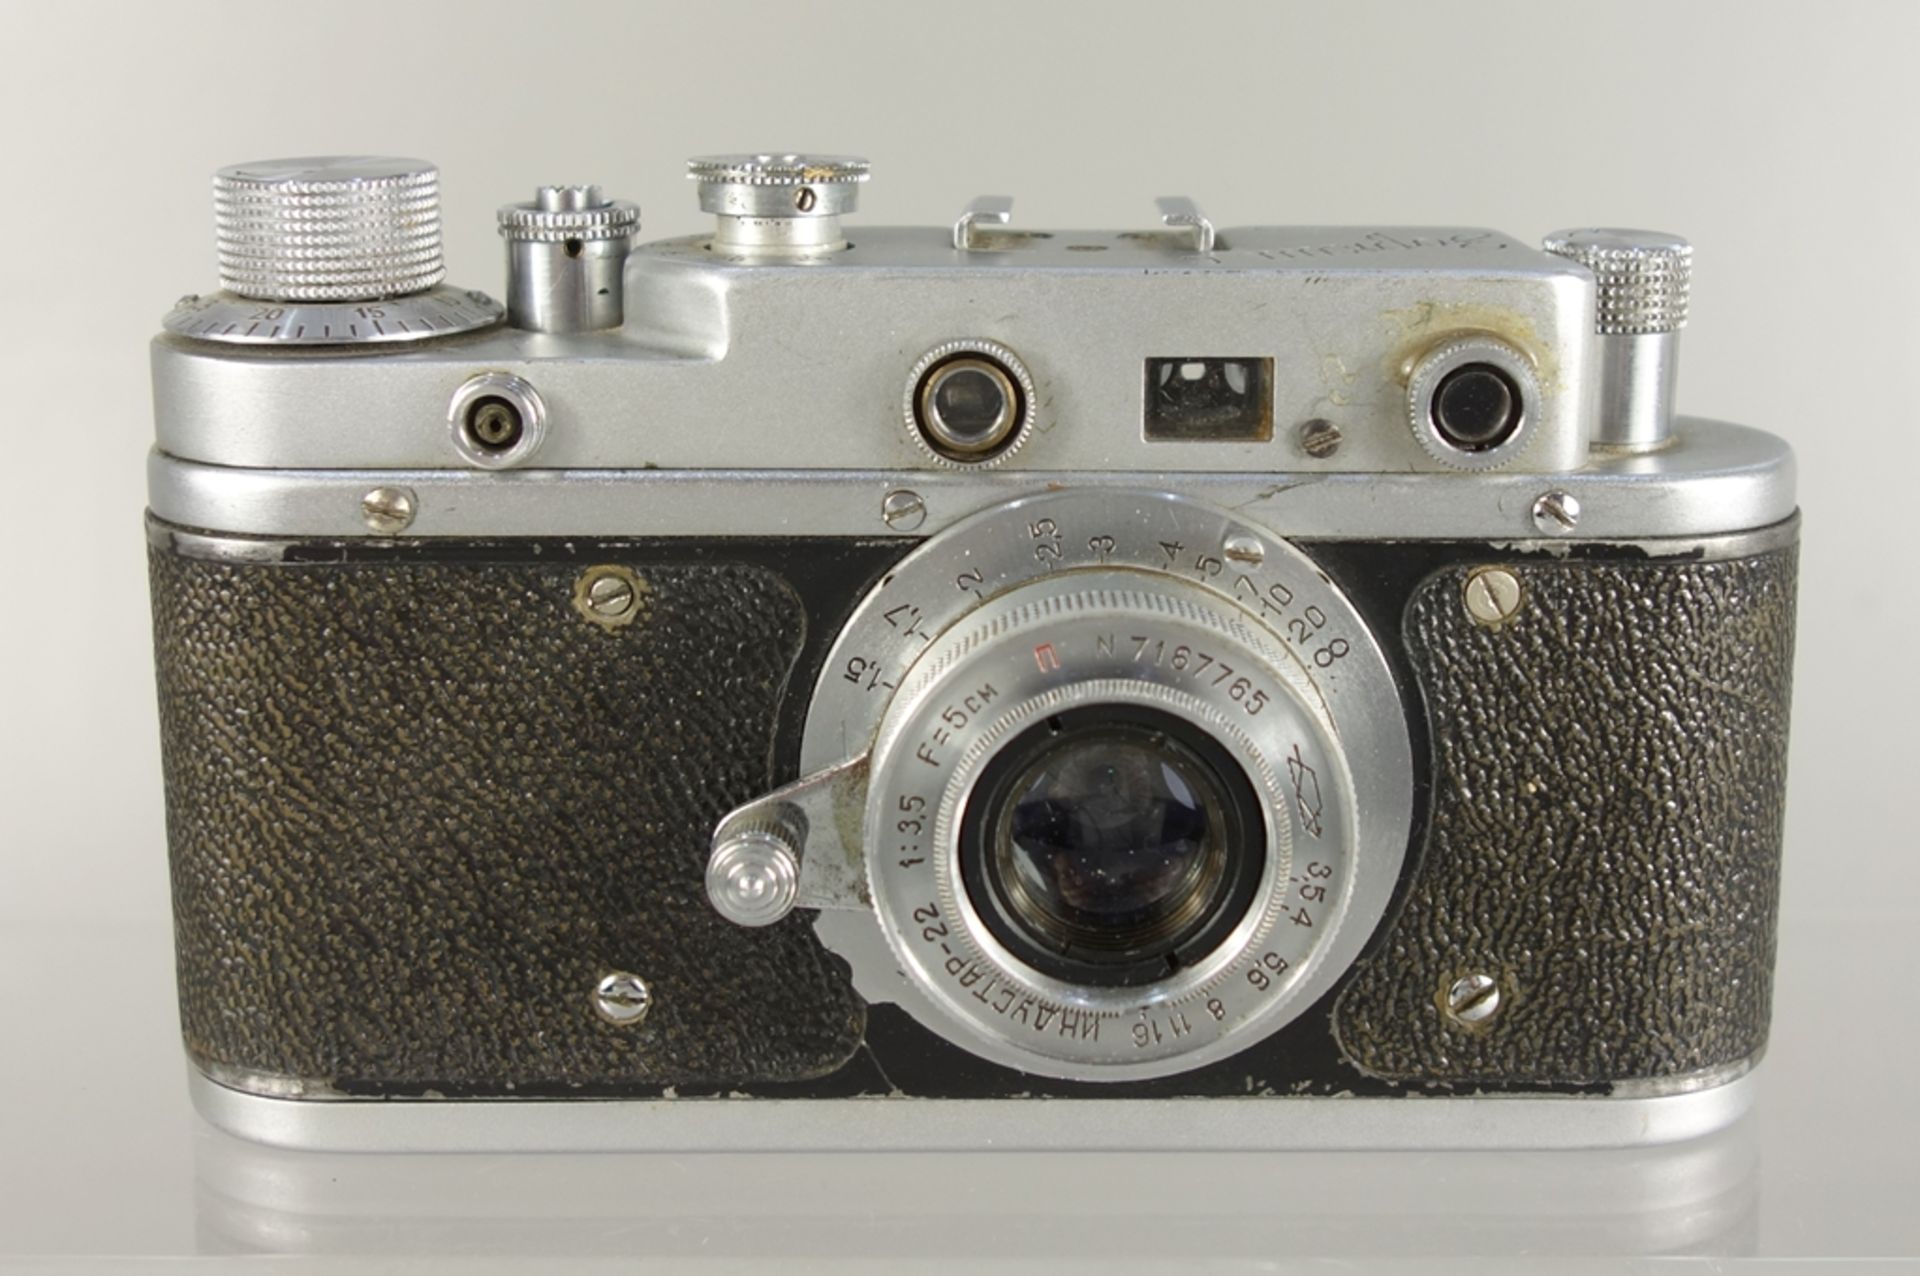 Messsucherkamera KMZ Zorki C, späte 1950er Jahre, russische Leica-Kopie, Serien-Nr. 57205843,